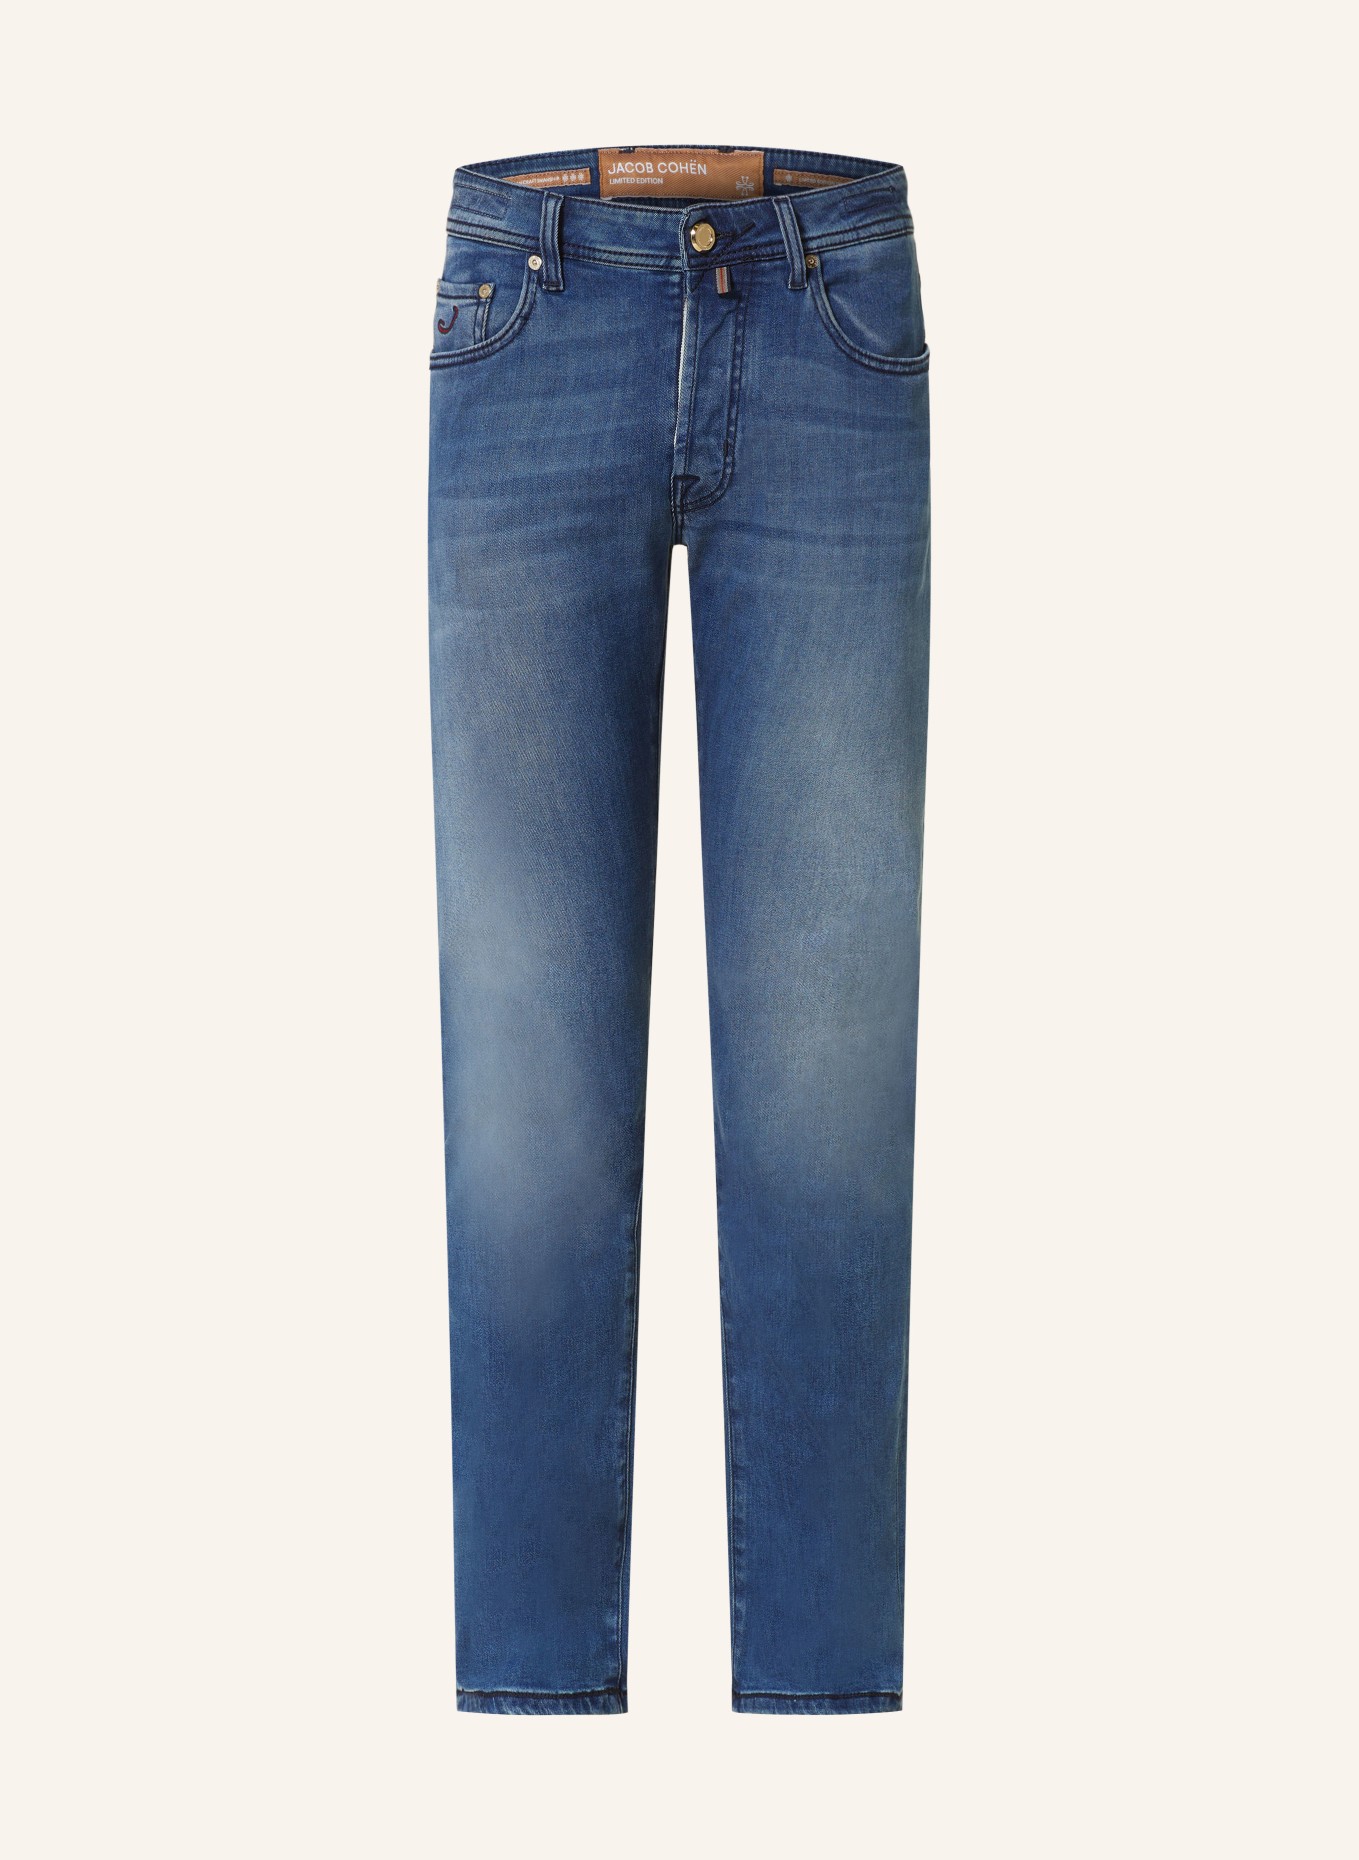 JACOB COHEN Jeans BARD slim fit, Color: 757D Mid Blue (Image 1)